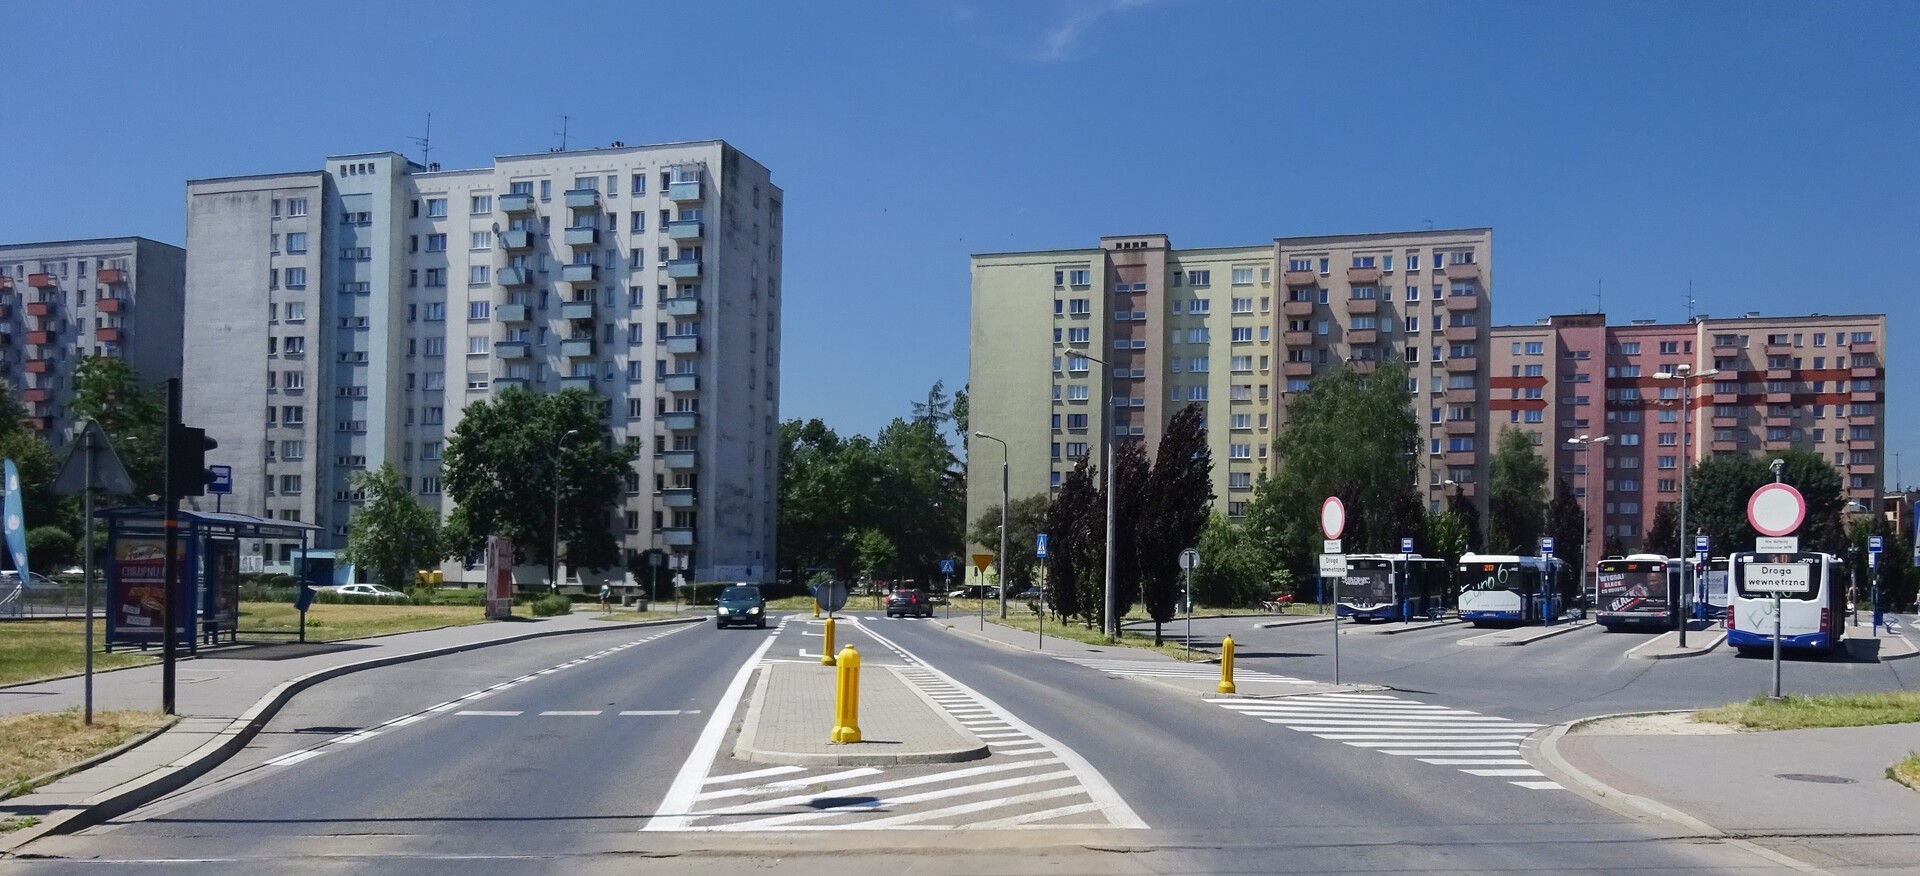 Vecindarios de Cracovia - Los barrios más importantes de Cracovia